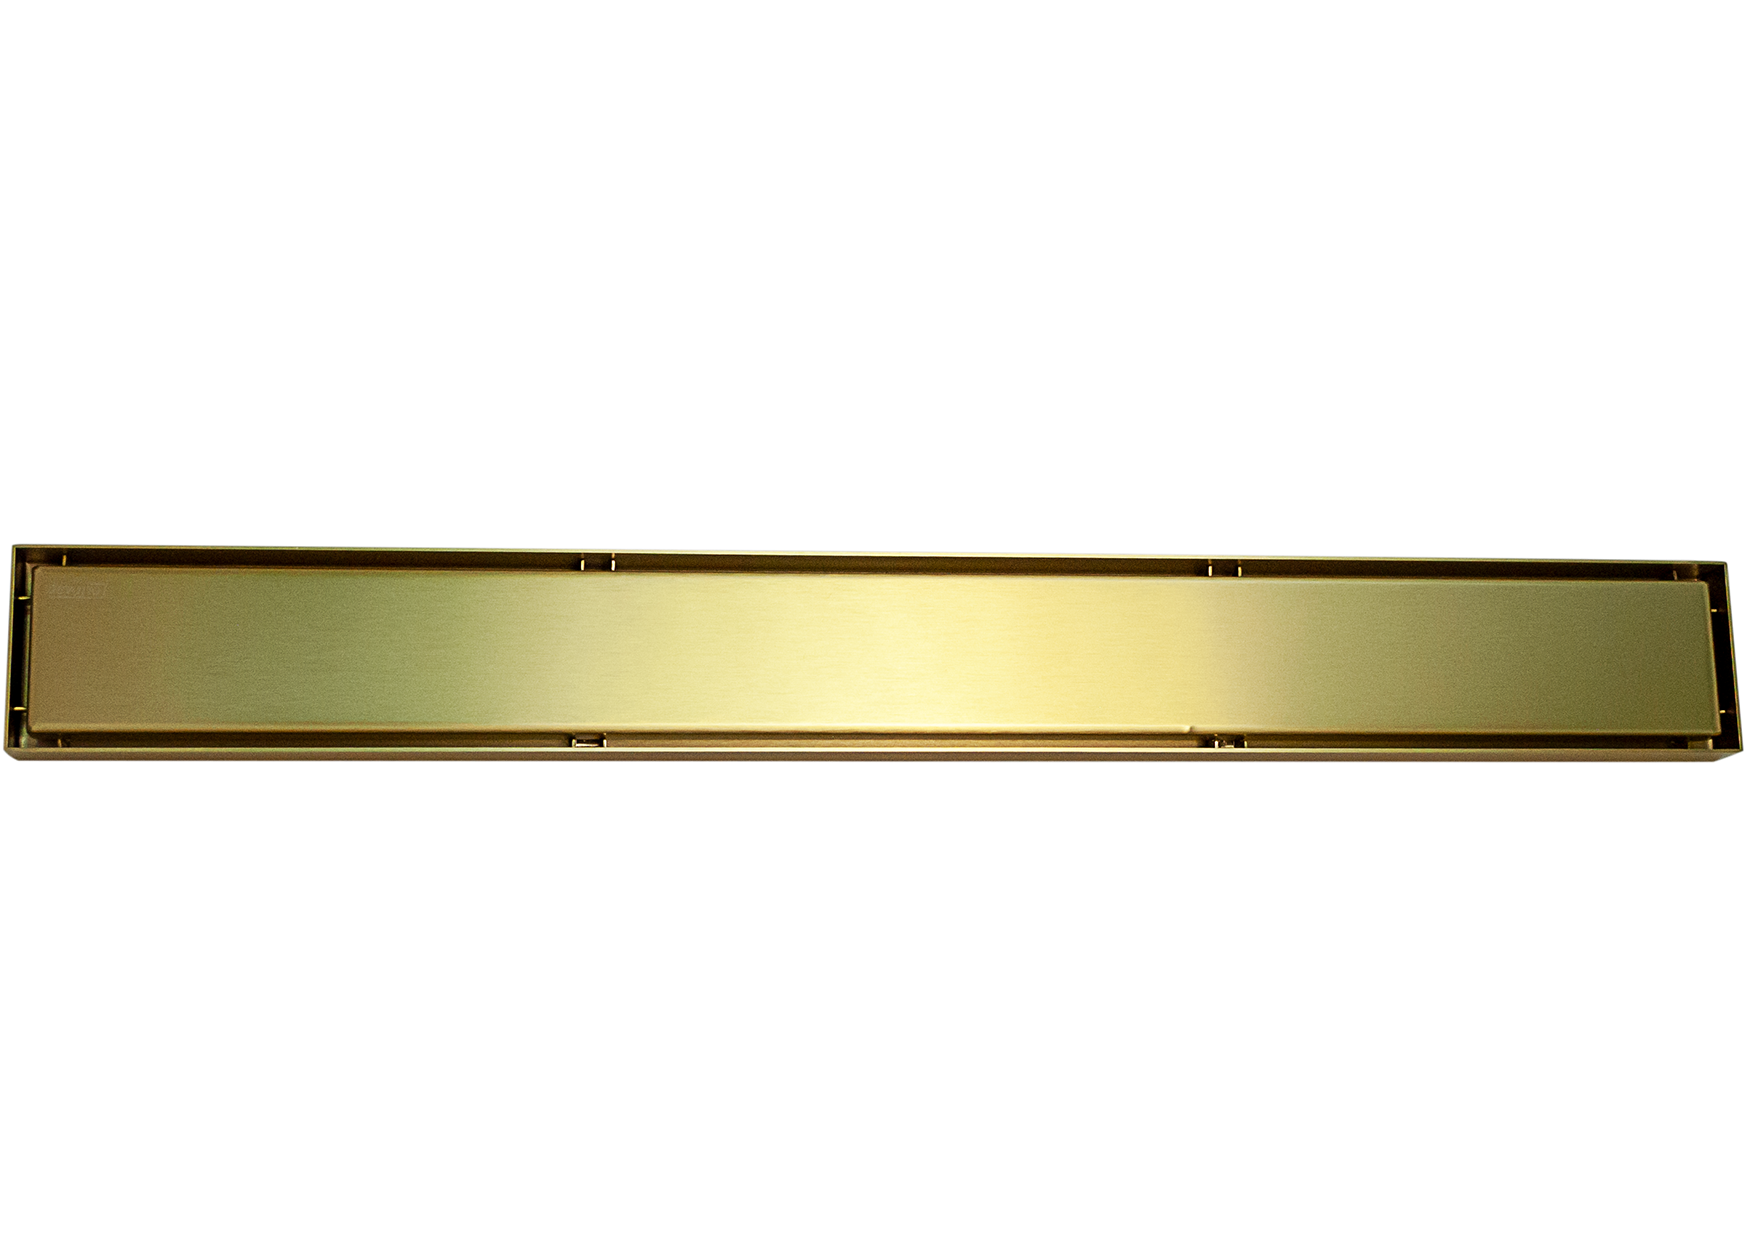 Devario Premio Shower Channel Solid Plate 600mm S/S